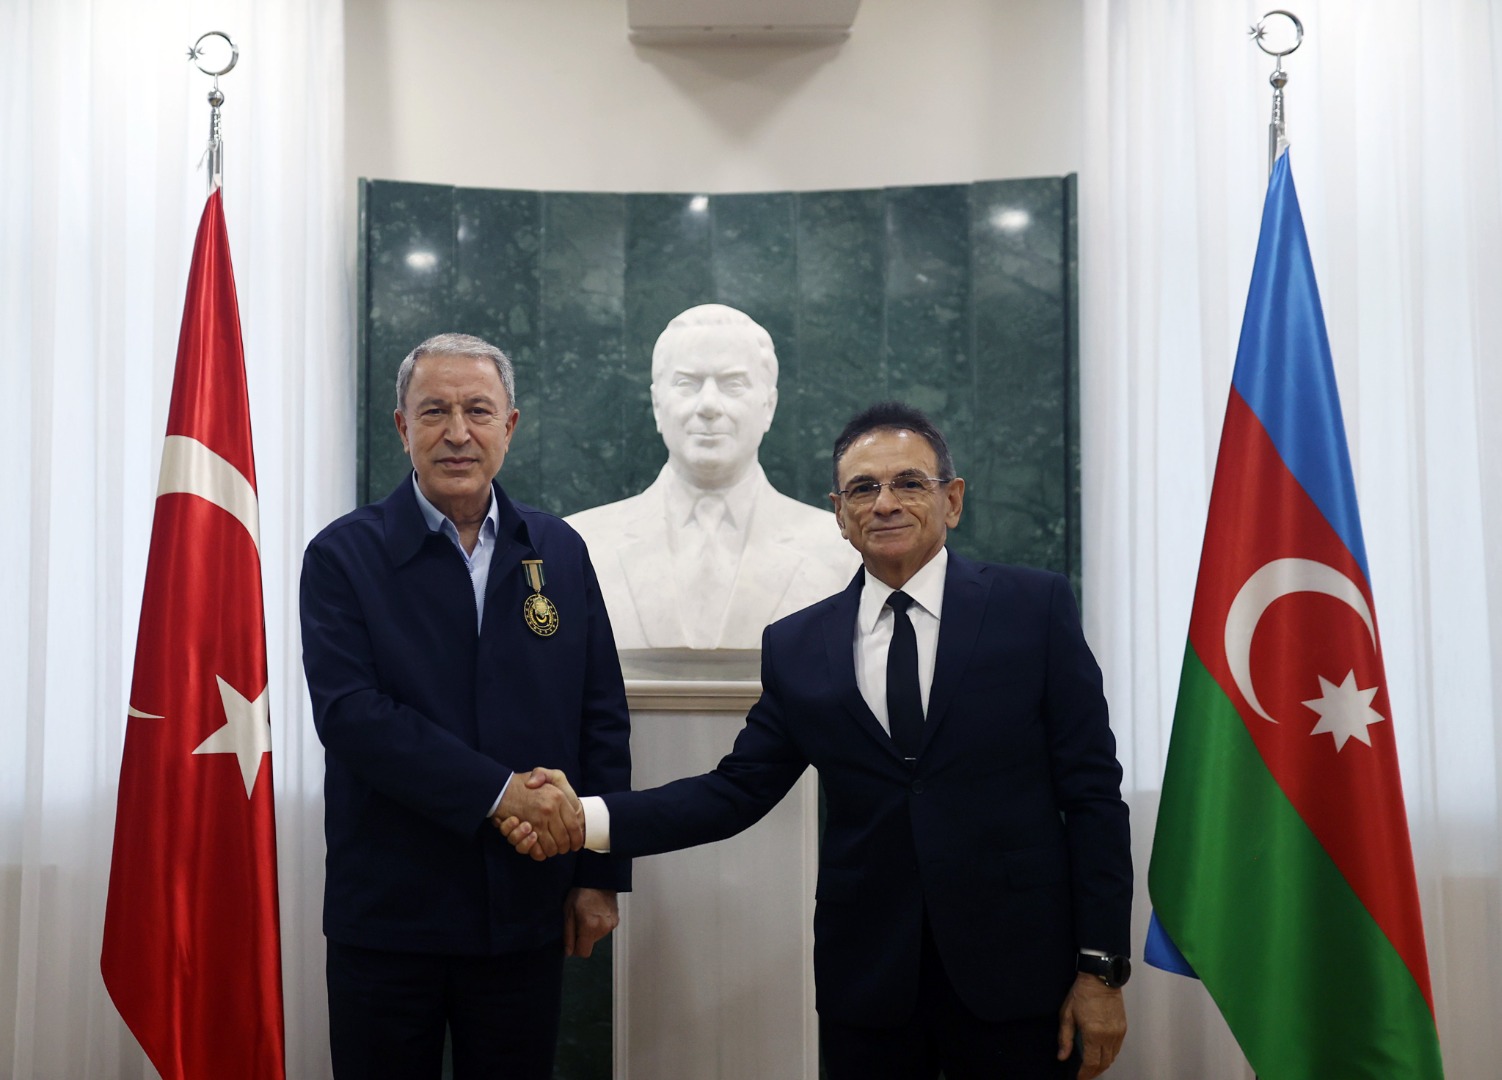  Milli Savunma Bakanı Akar’a Azerbaycan’dan madalya 